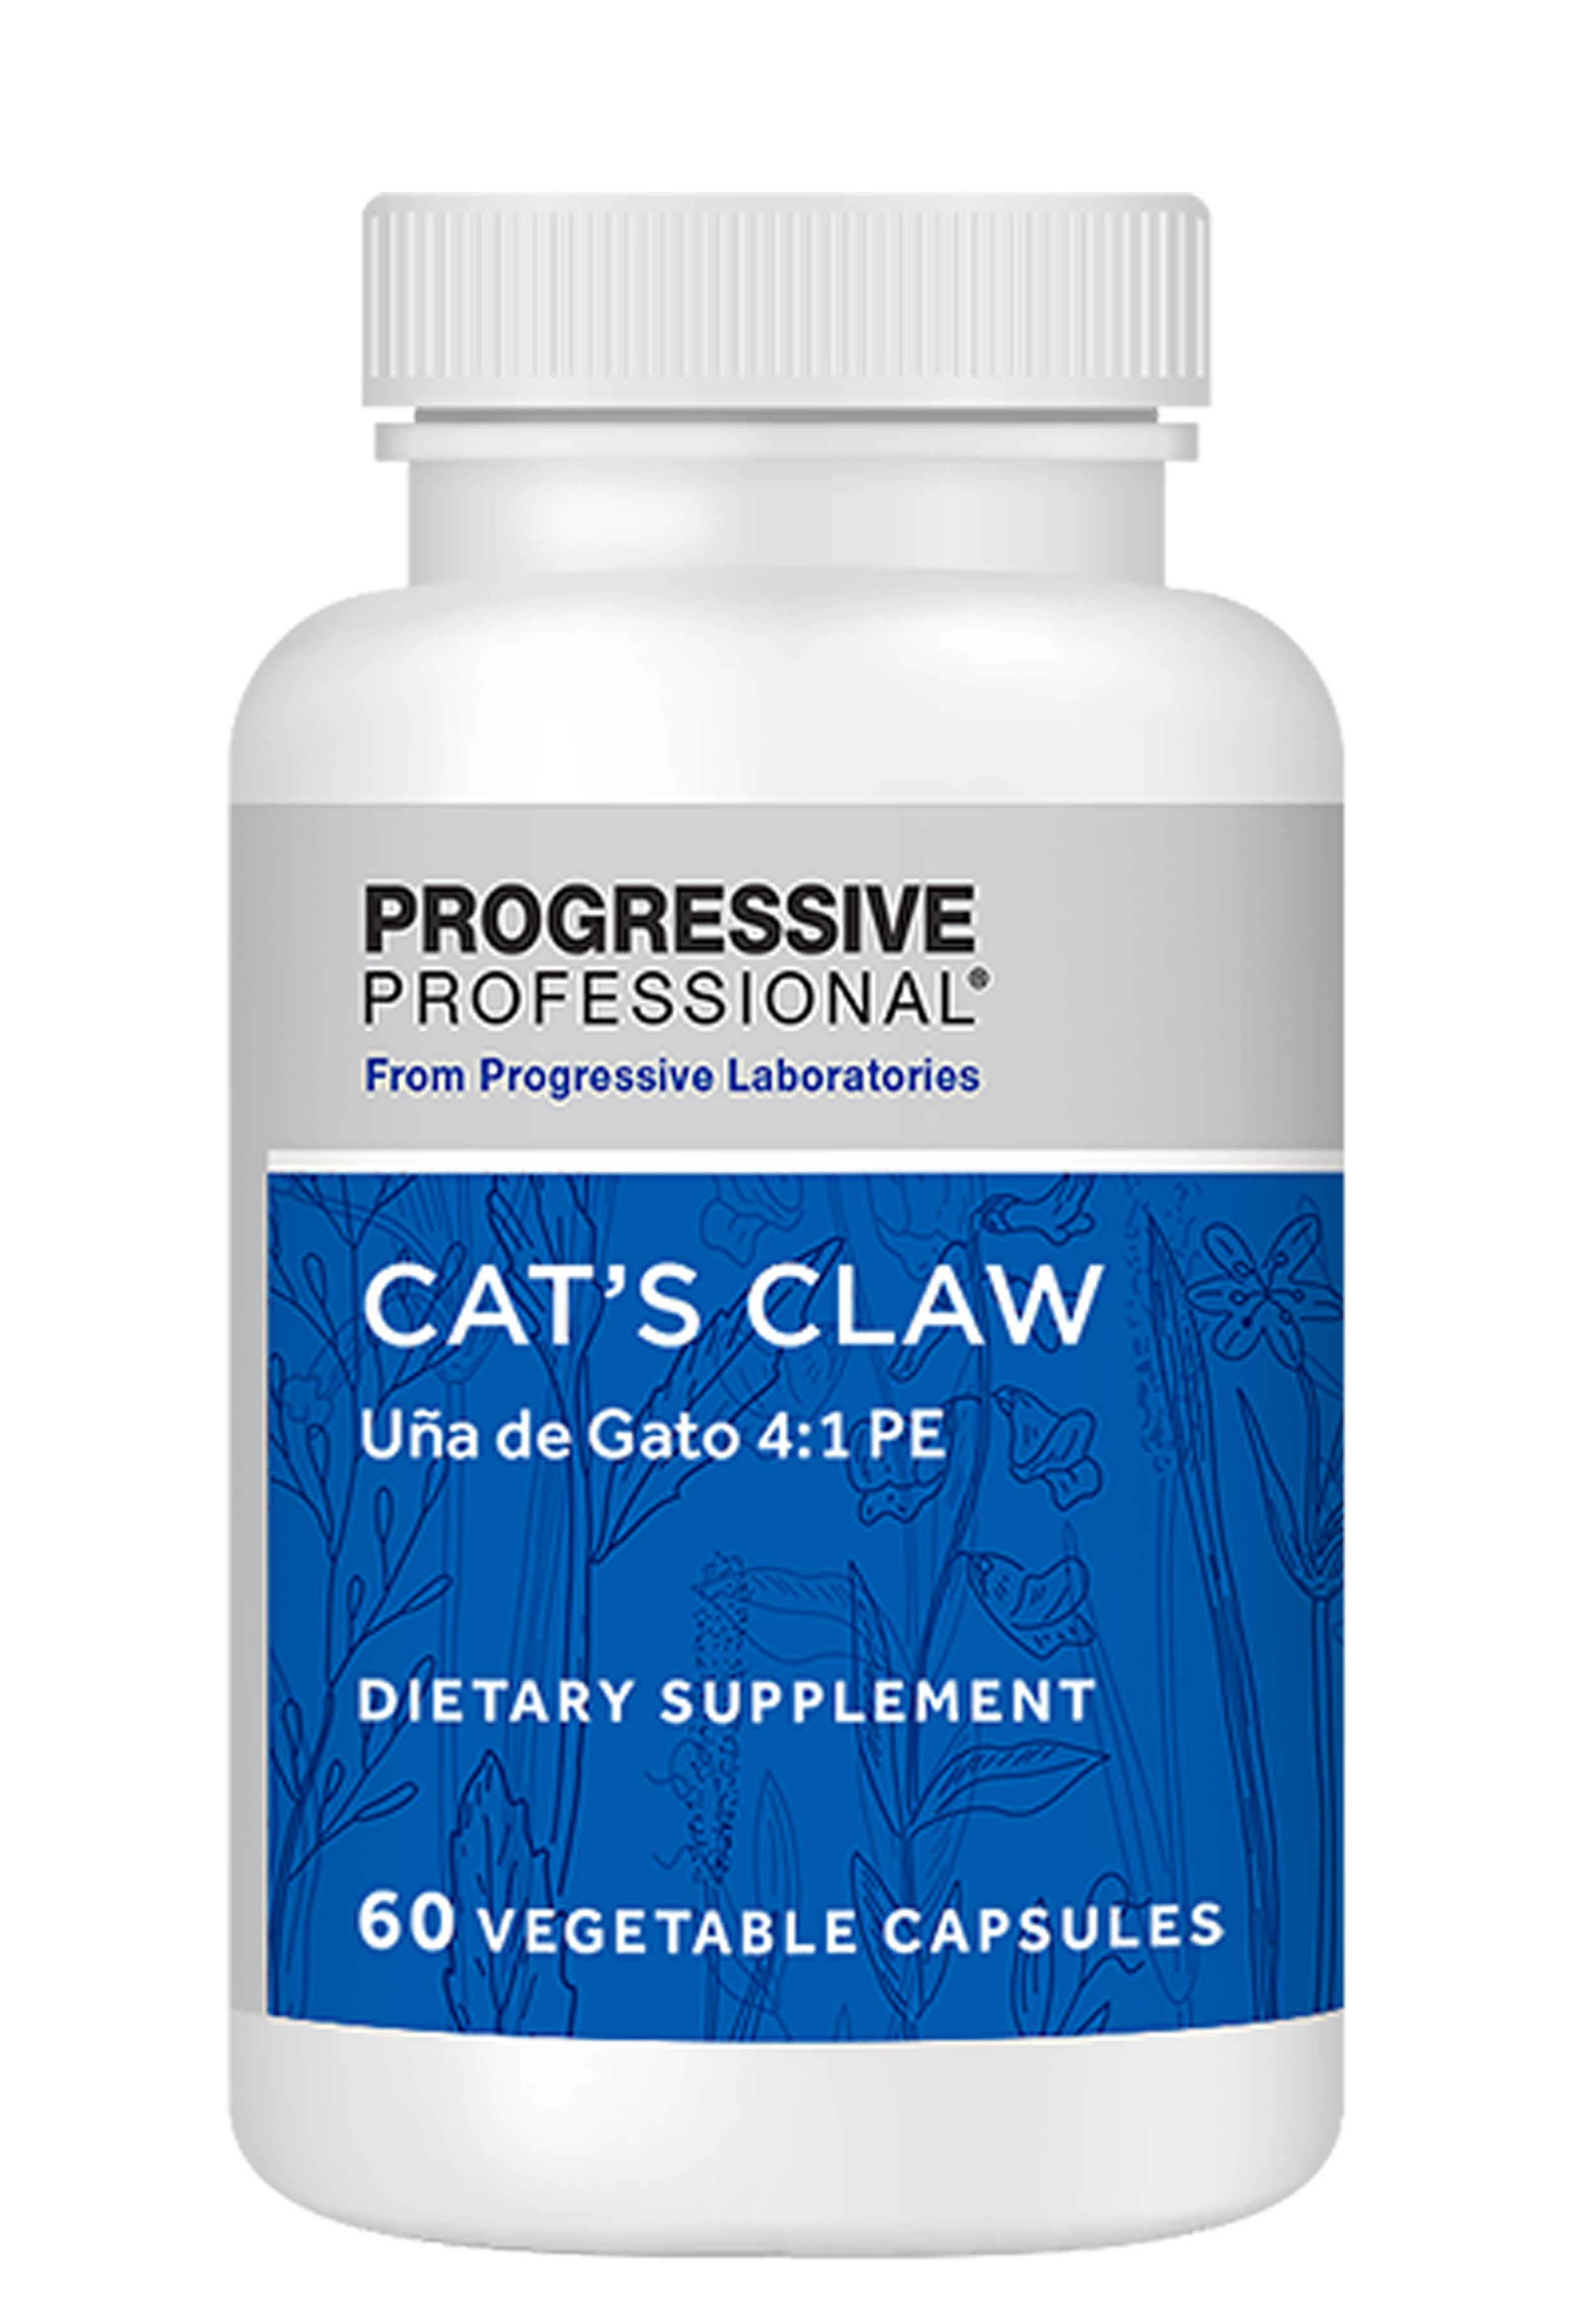 Progressive Laboratories Cat's Claw